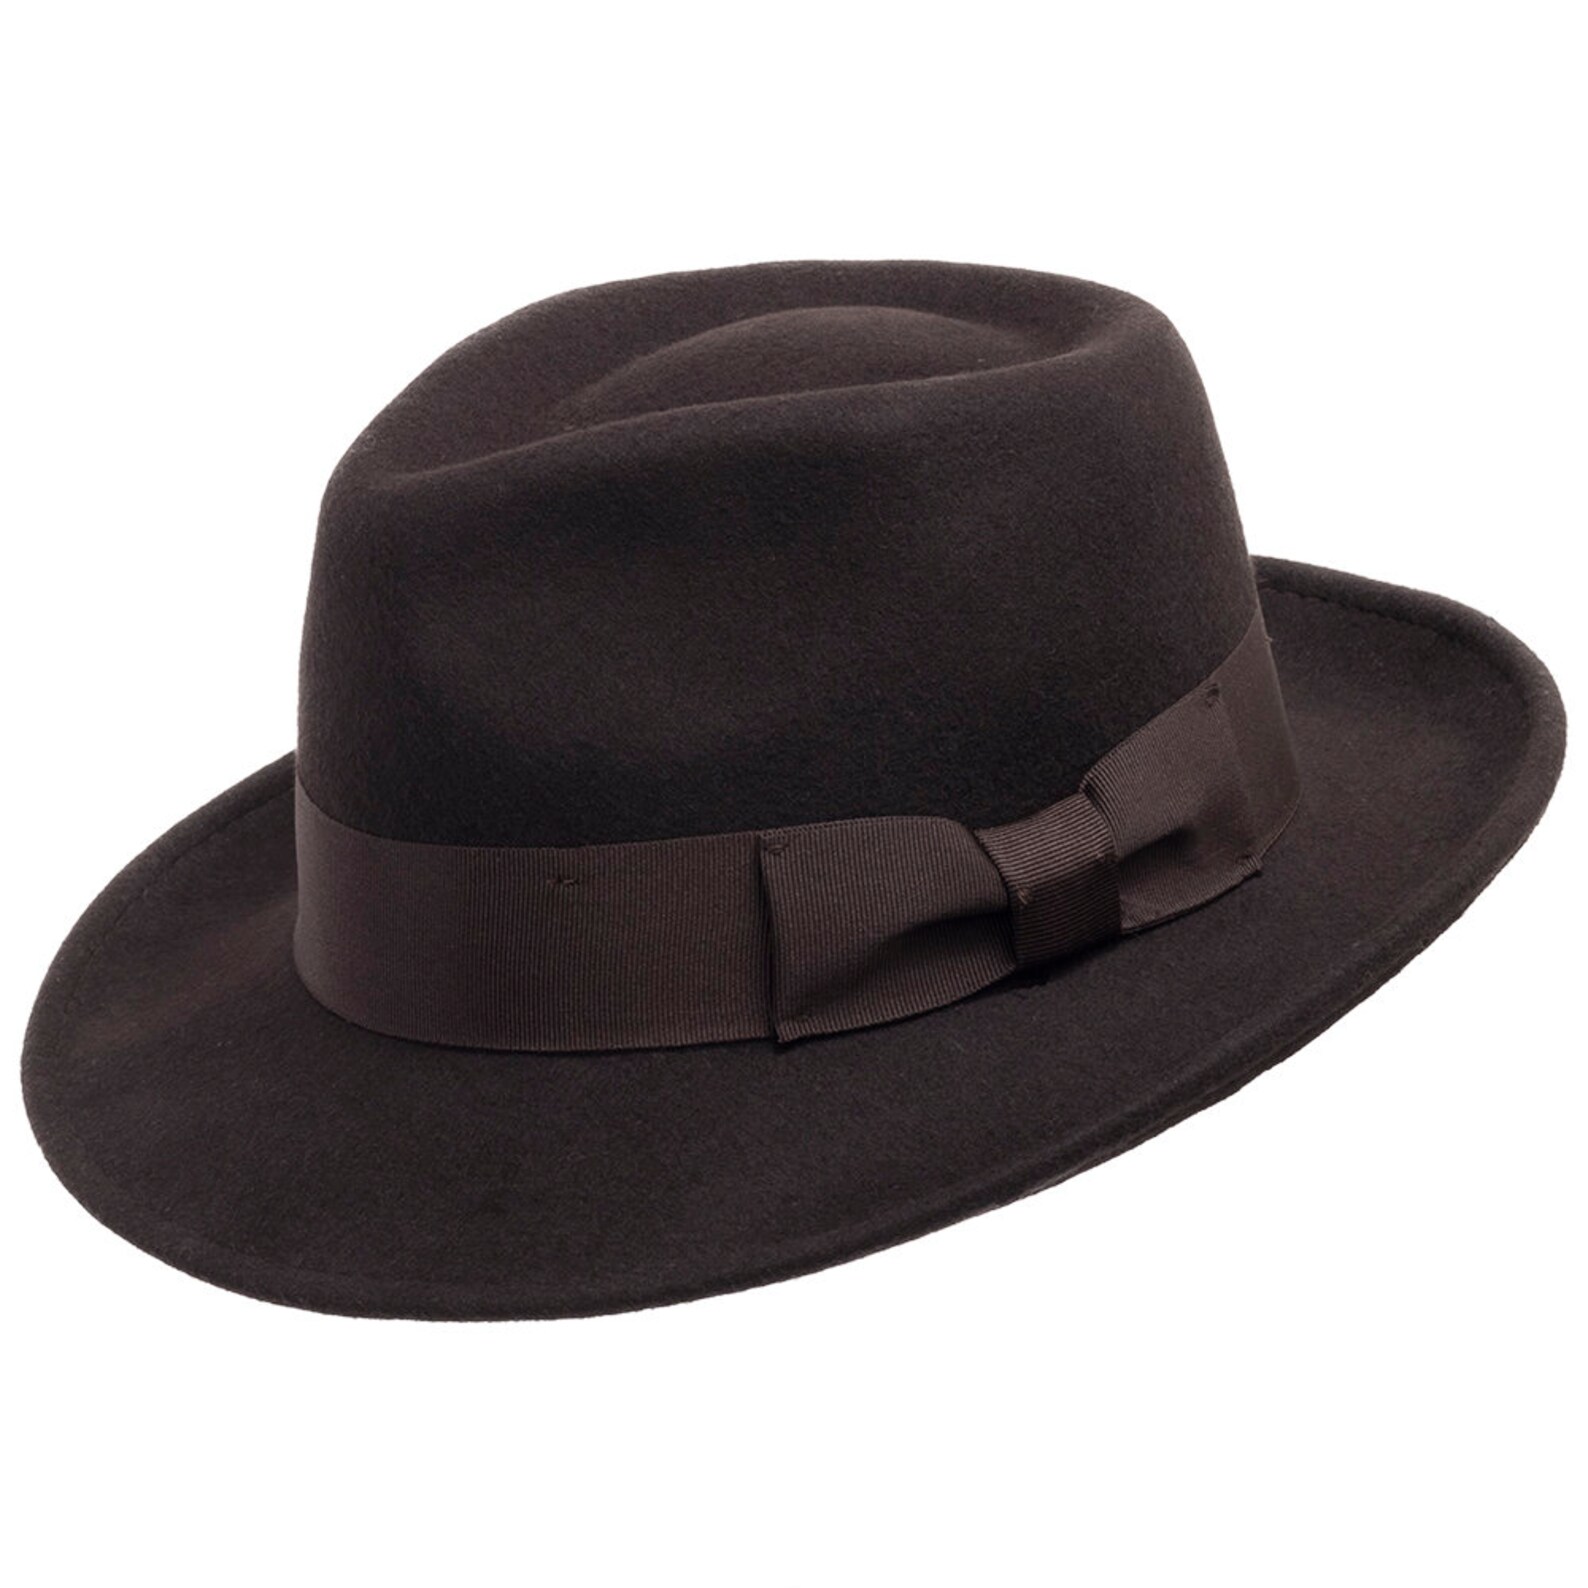 Ultrafino Brooklyn Crushable Wool Felt Fedora Hat | Etsy